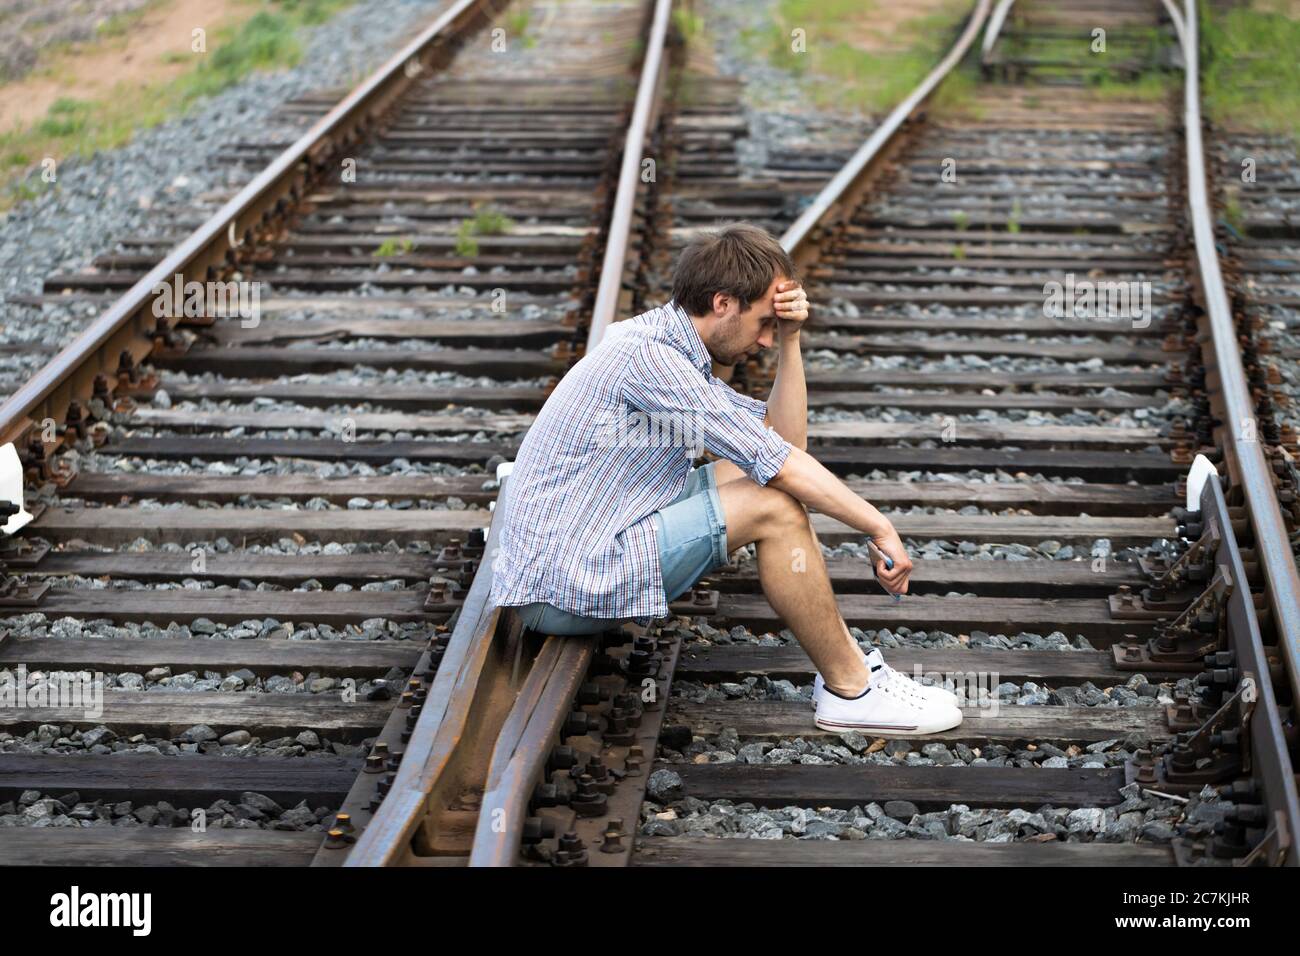 Deprimierter Mann, der auf den Gleisen sitzt, Telefon hält, trifft eine schwierige Entscheidung, in der Vergangenheit zu leben oder seine Zukunft zu ändern. Ändern des Lebenswegs c Stockfoto